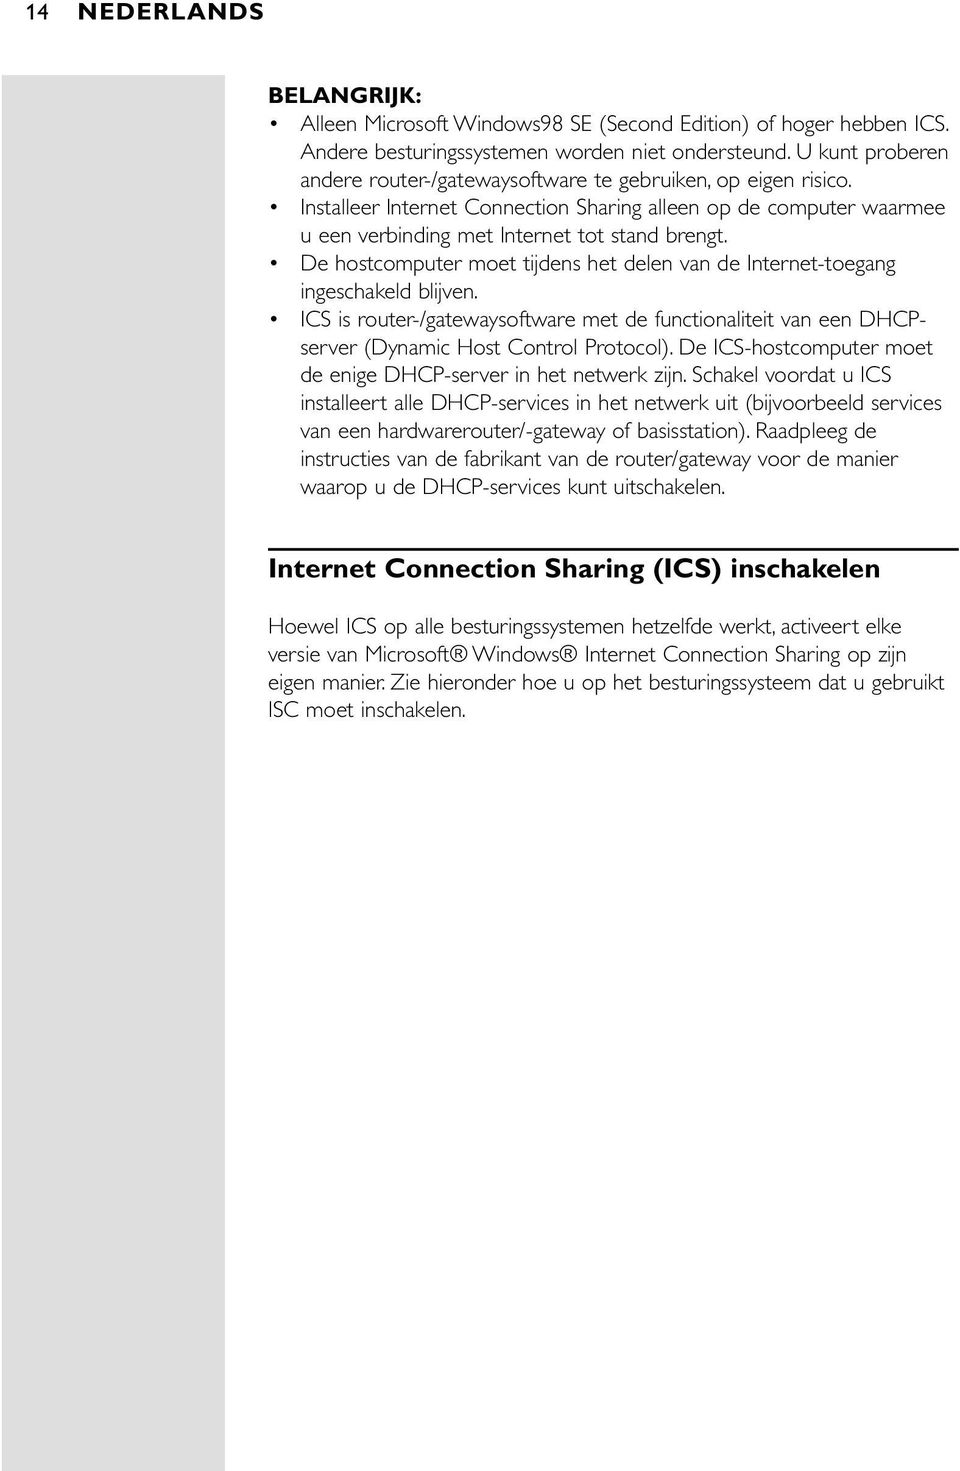 De hostcomputer moet tijdens het delen van de Internet-toegang ingeschakeld blijven. ICS is router-/gatewaysoftware met de functionaliteit van een DHCPserver (Dynamic Host Control Protocol).